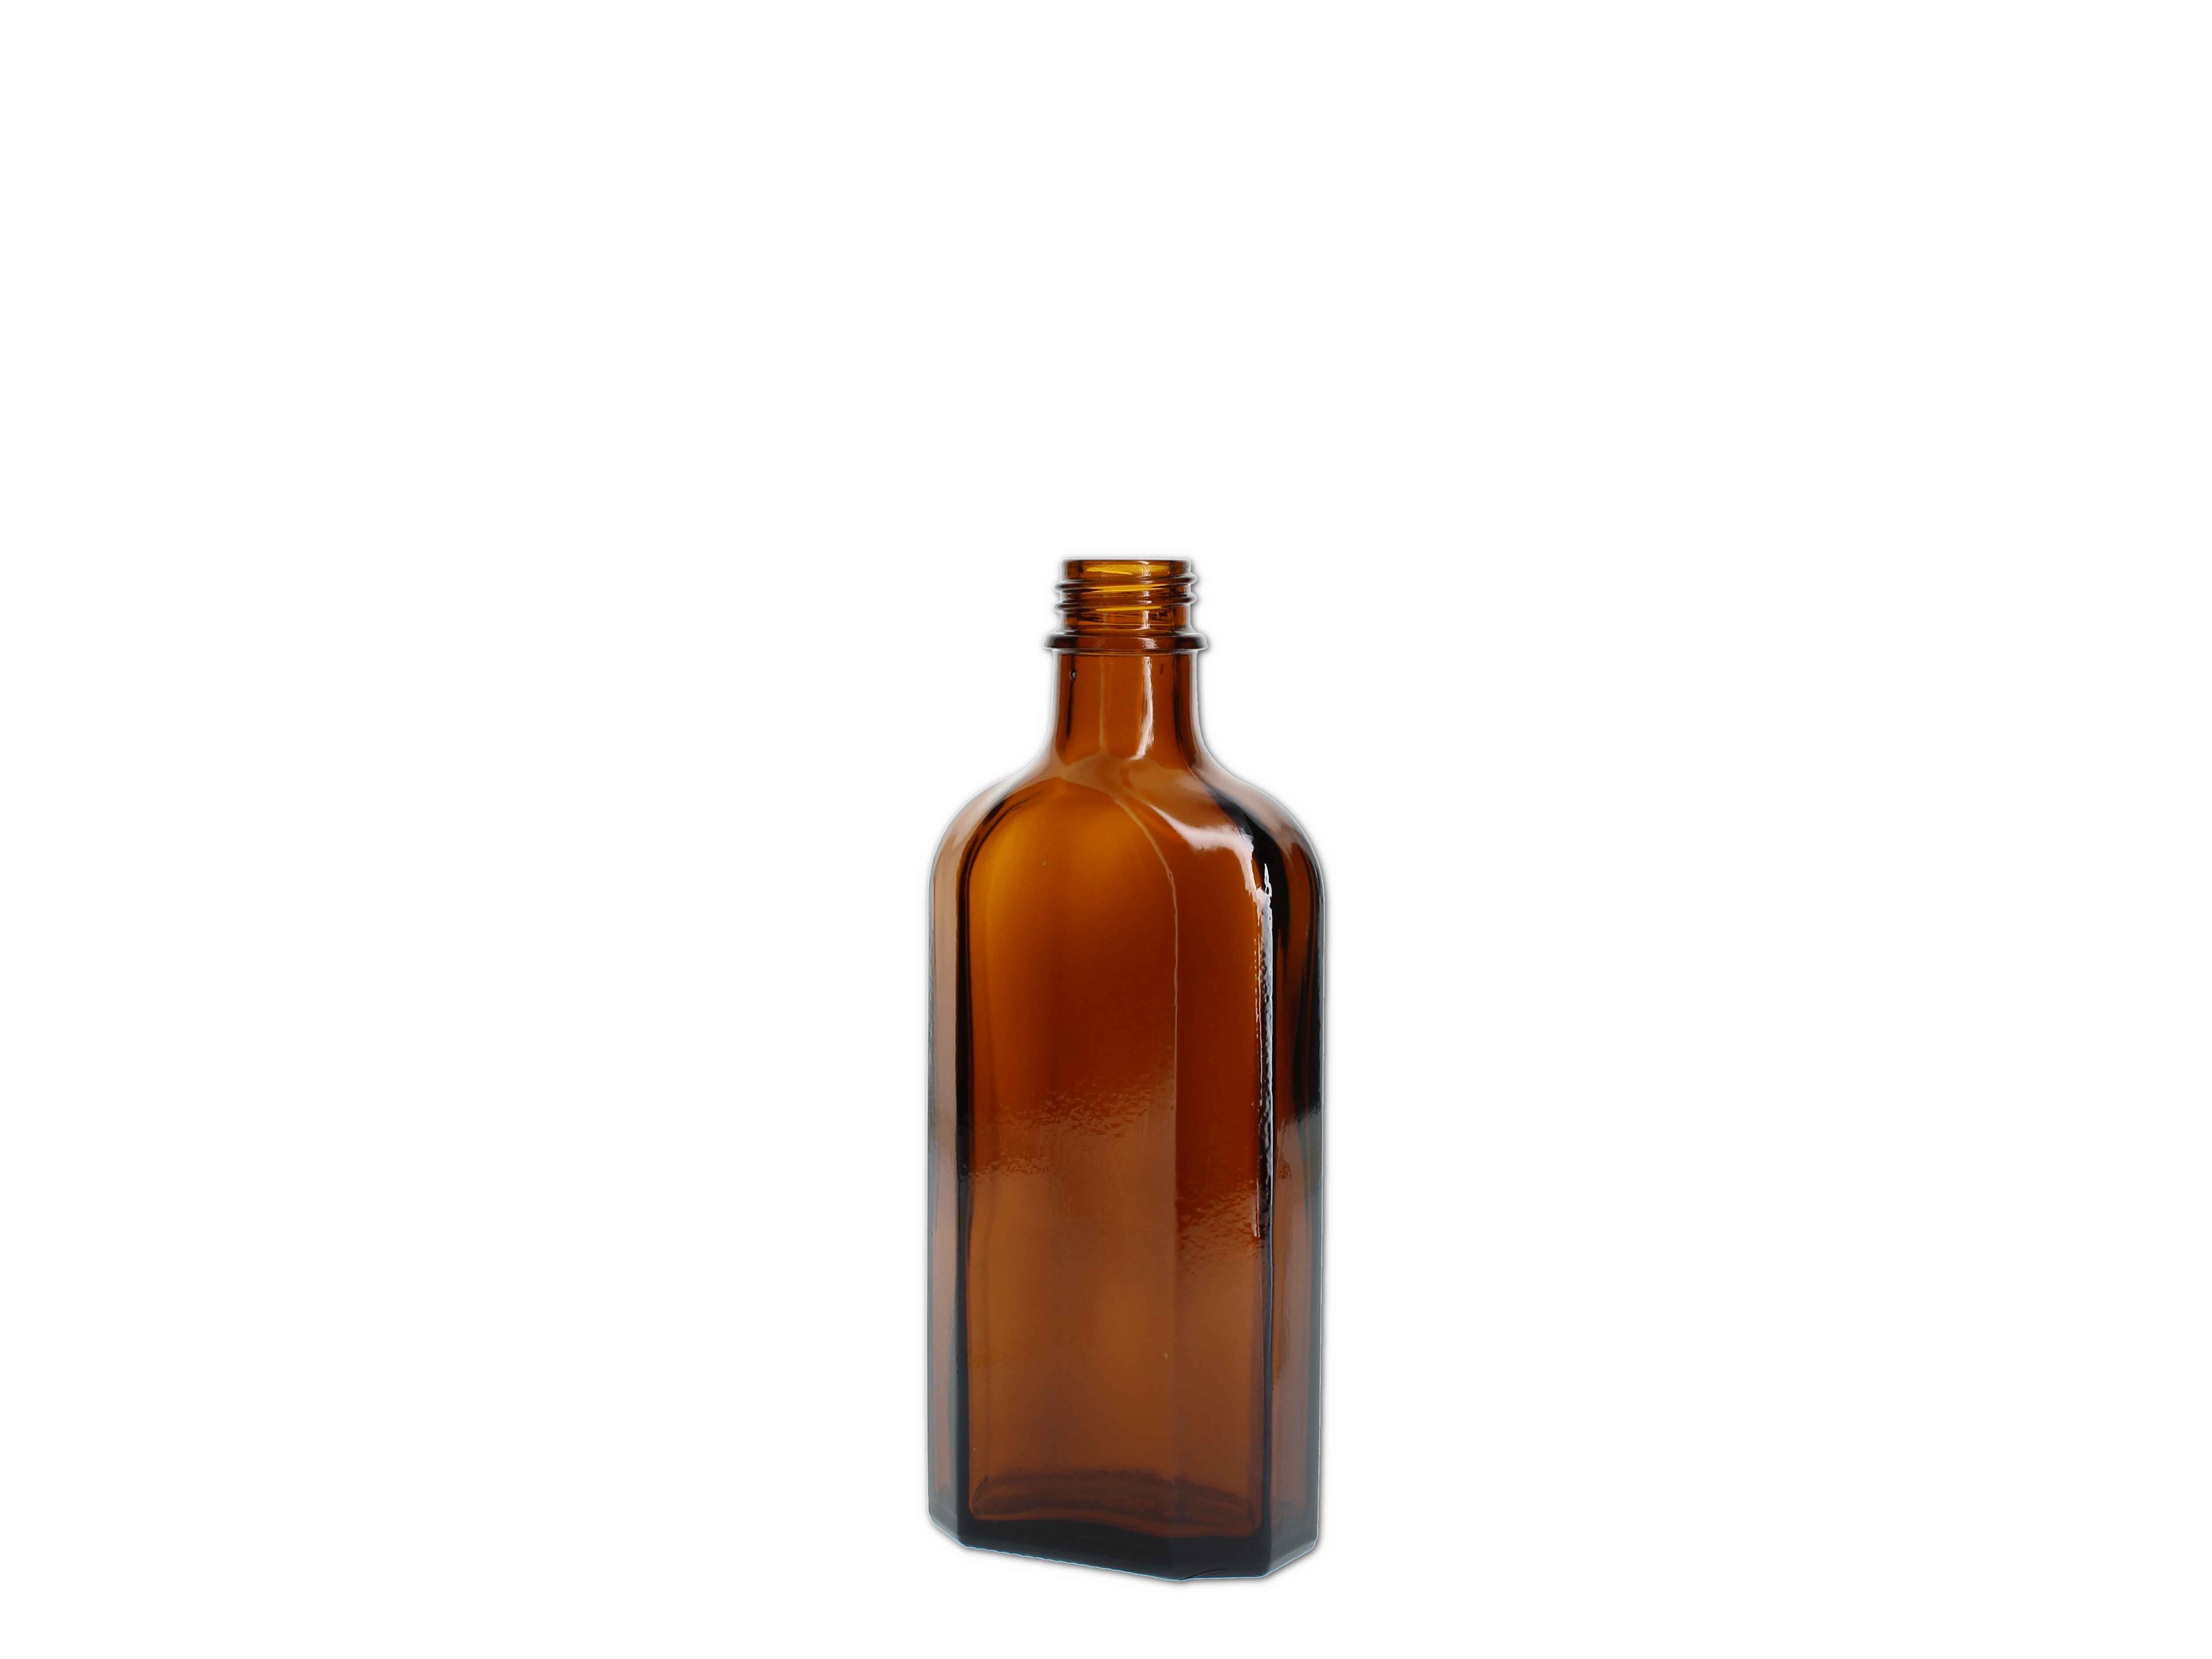    Meplatflasche braun 150ml (DIN22)